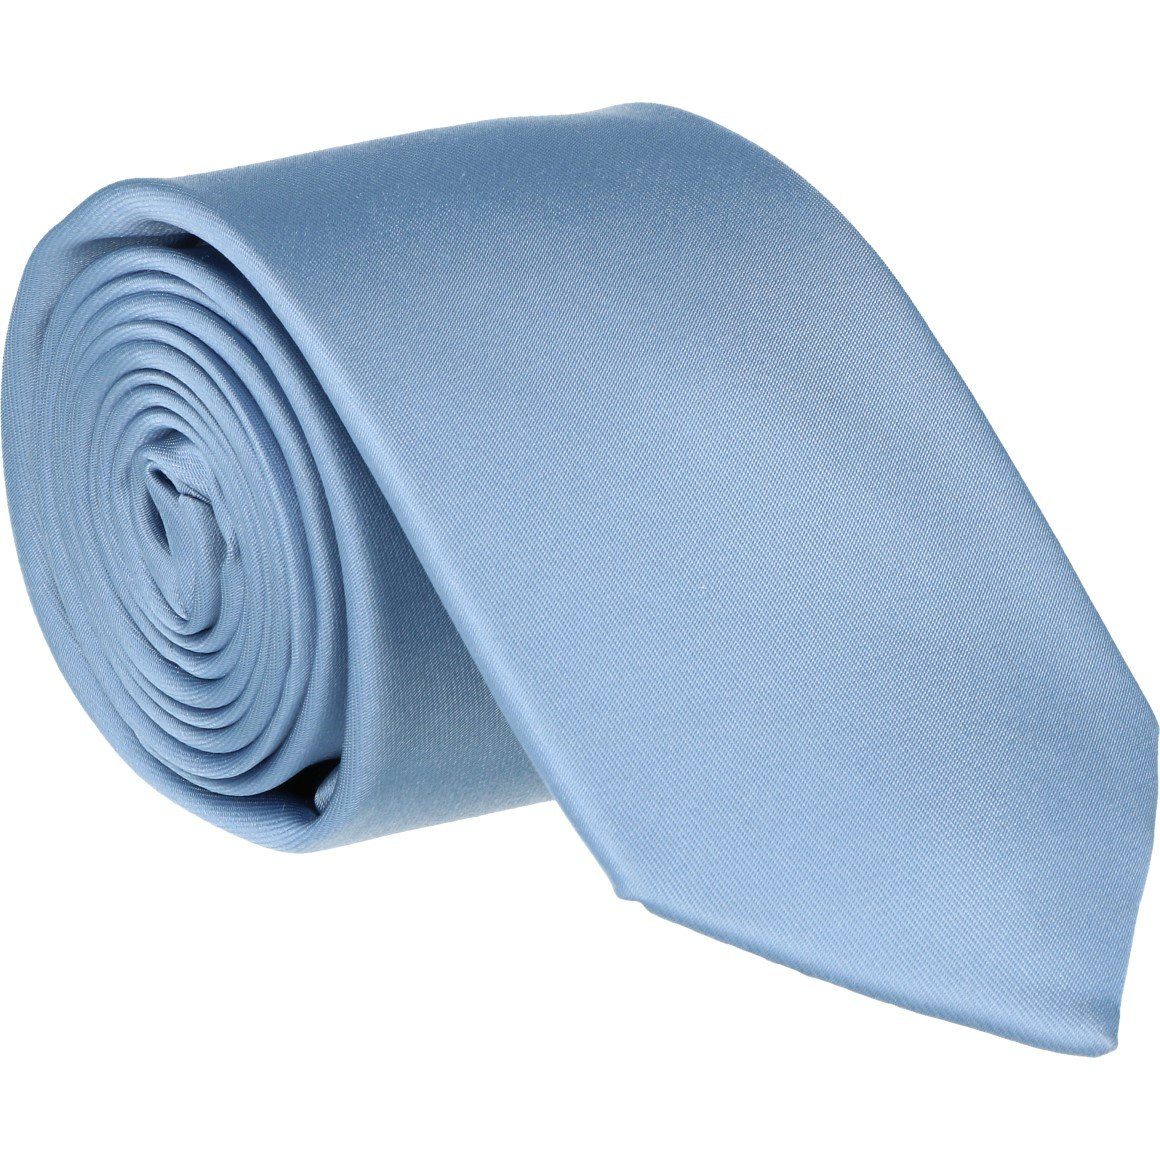 WILLEN hellblau Krawatte